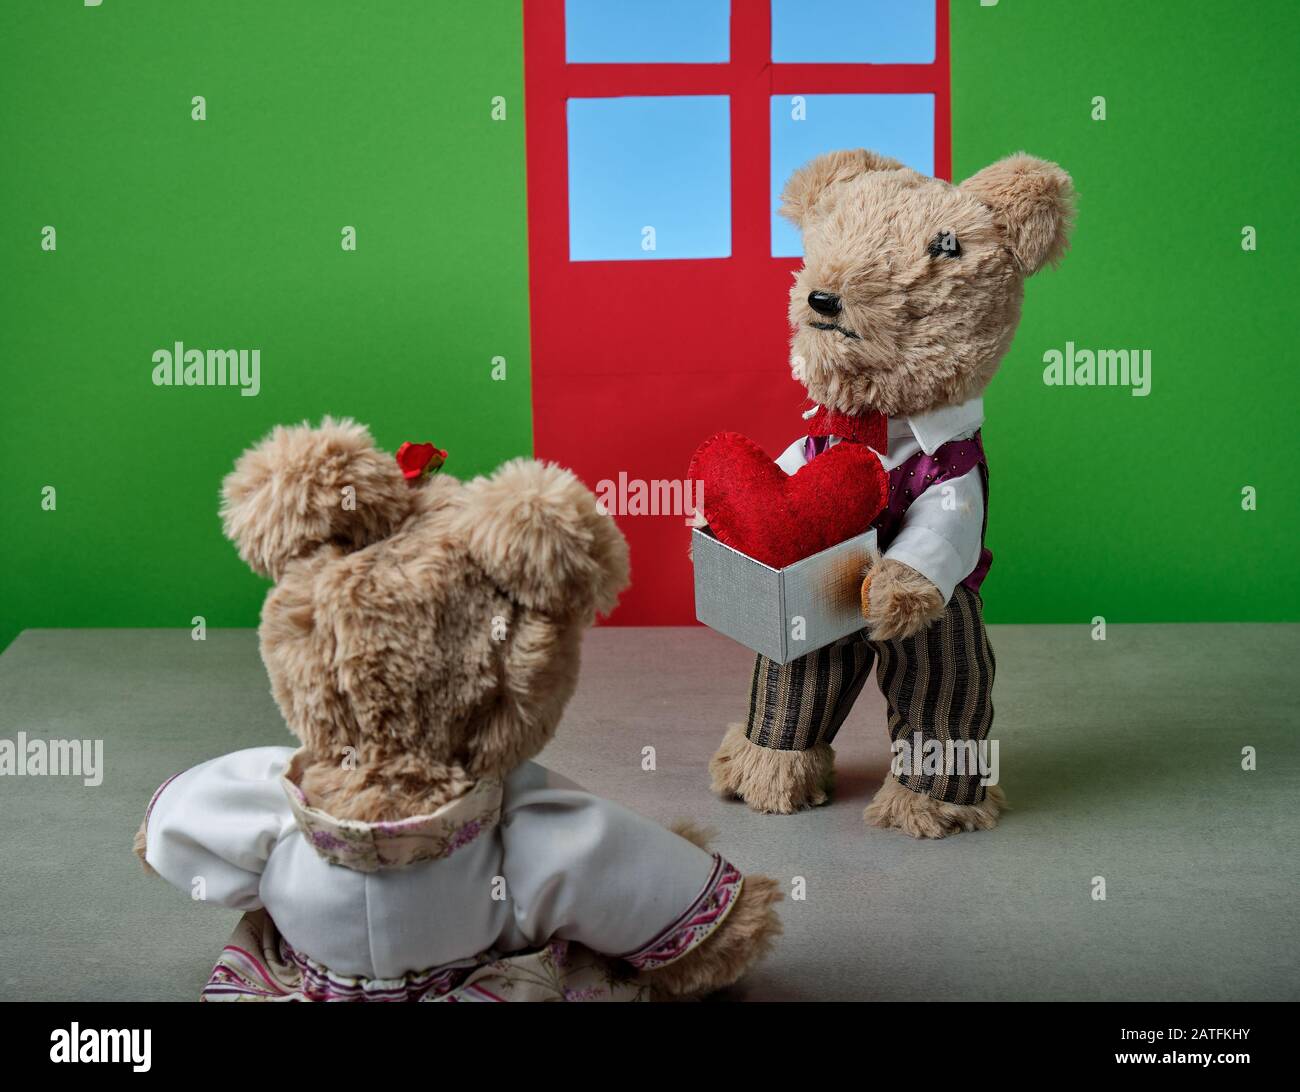 un couple d'ours en peluche célébrant la fête des valentines Banque D'Images